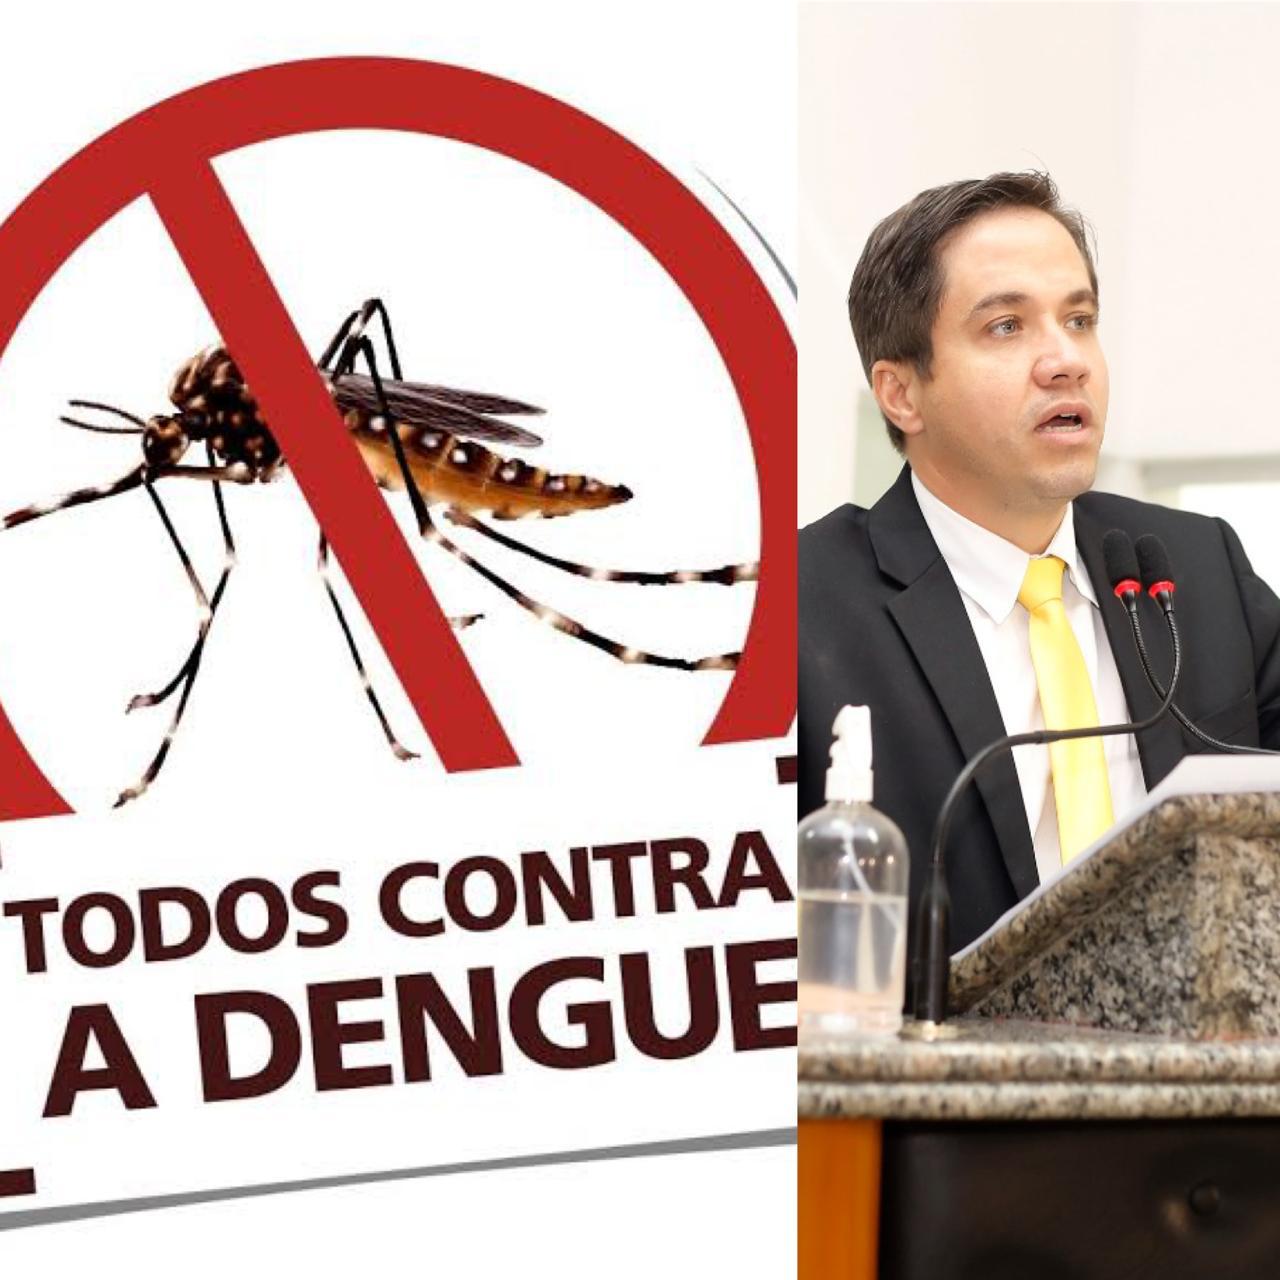 Vereador Dr. Salvador cobra urgência nas ações de combate à dengue e divulgação dos dados sobre a doença, em Juazeiro